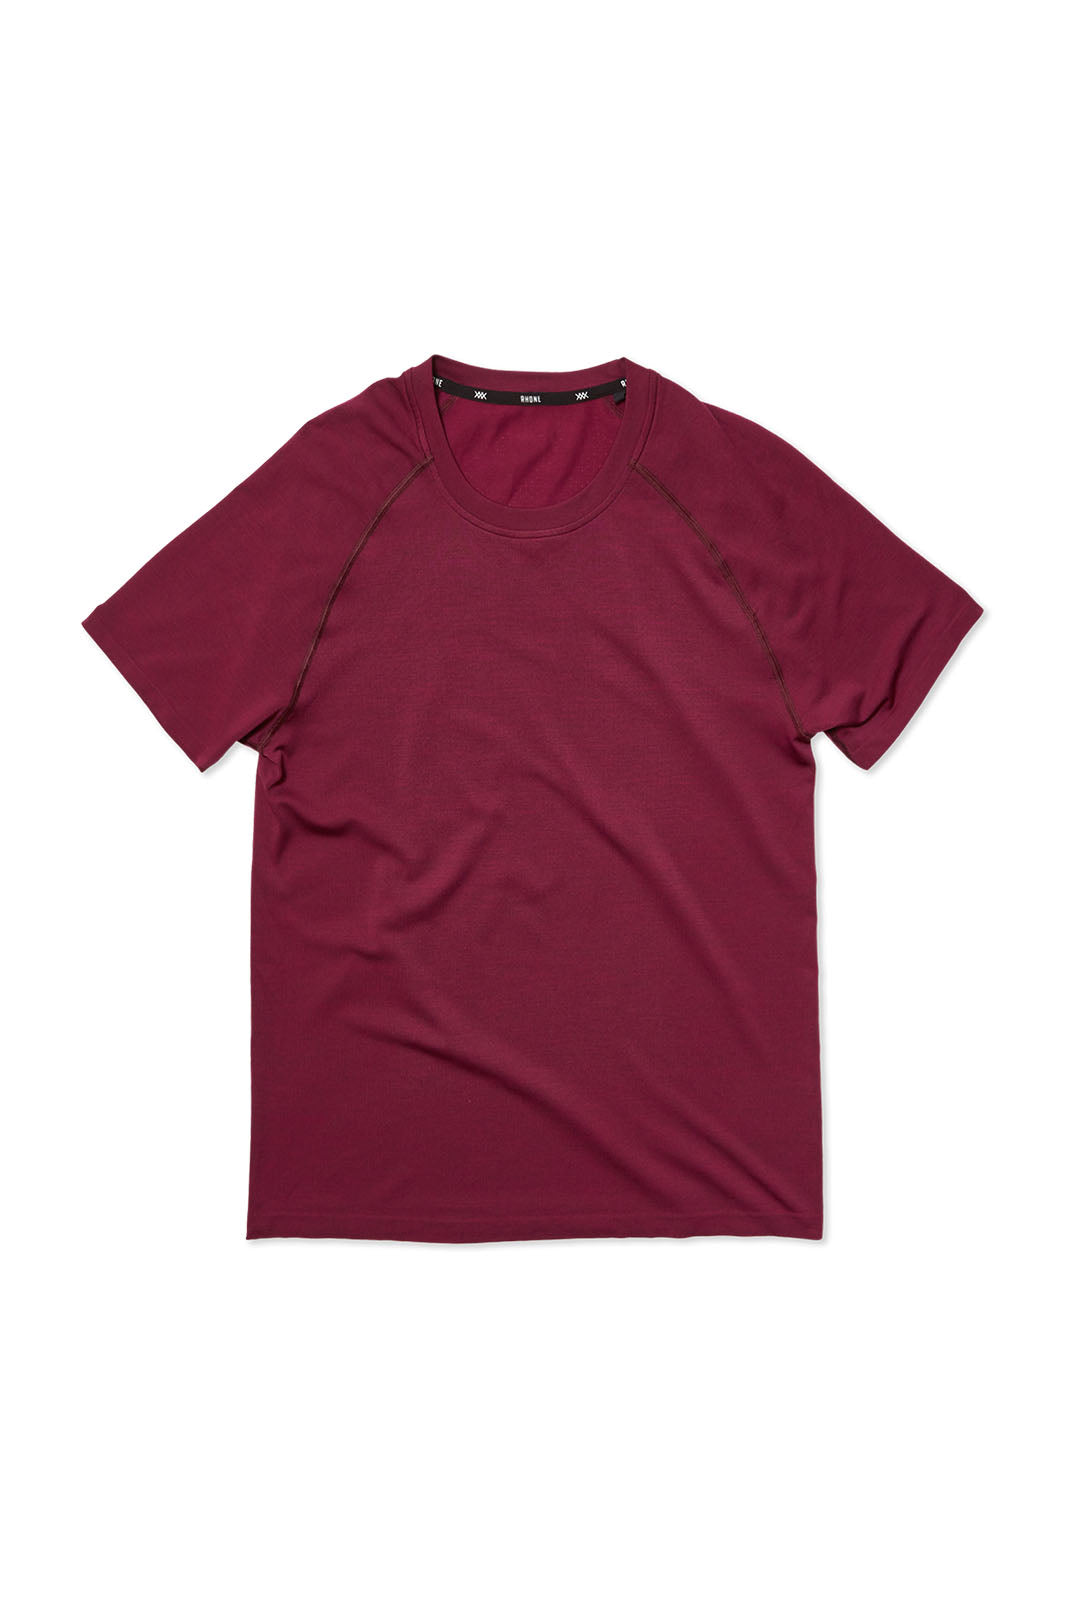 Reign Tech Short Sleeve T-Shirt - Deep Plum